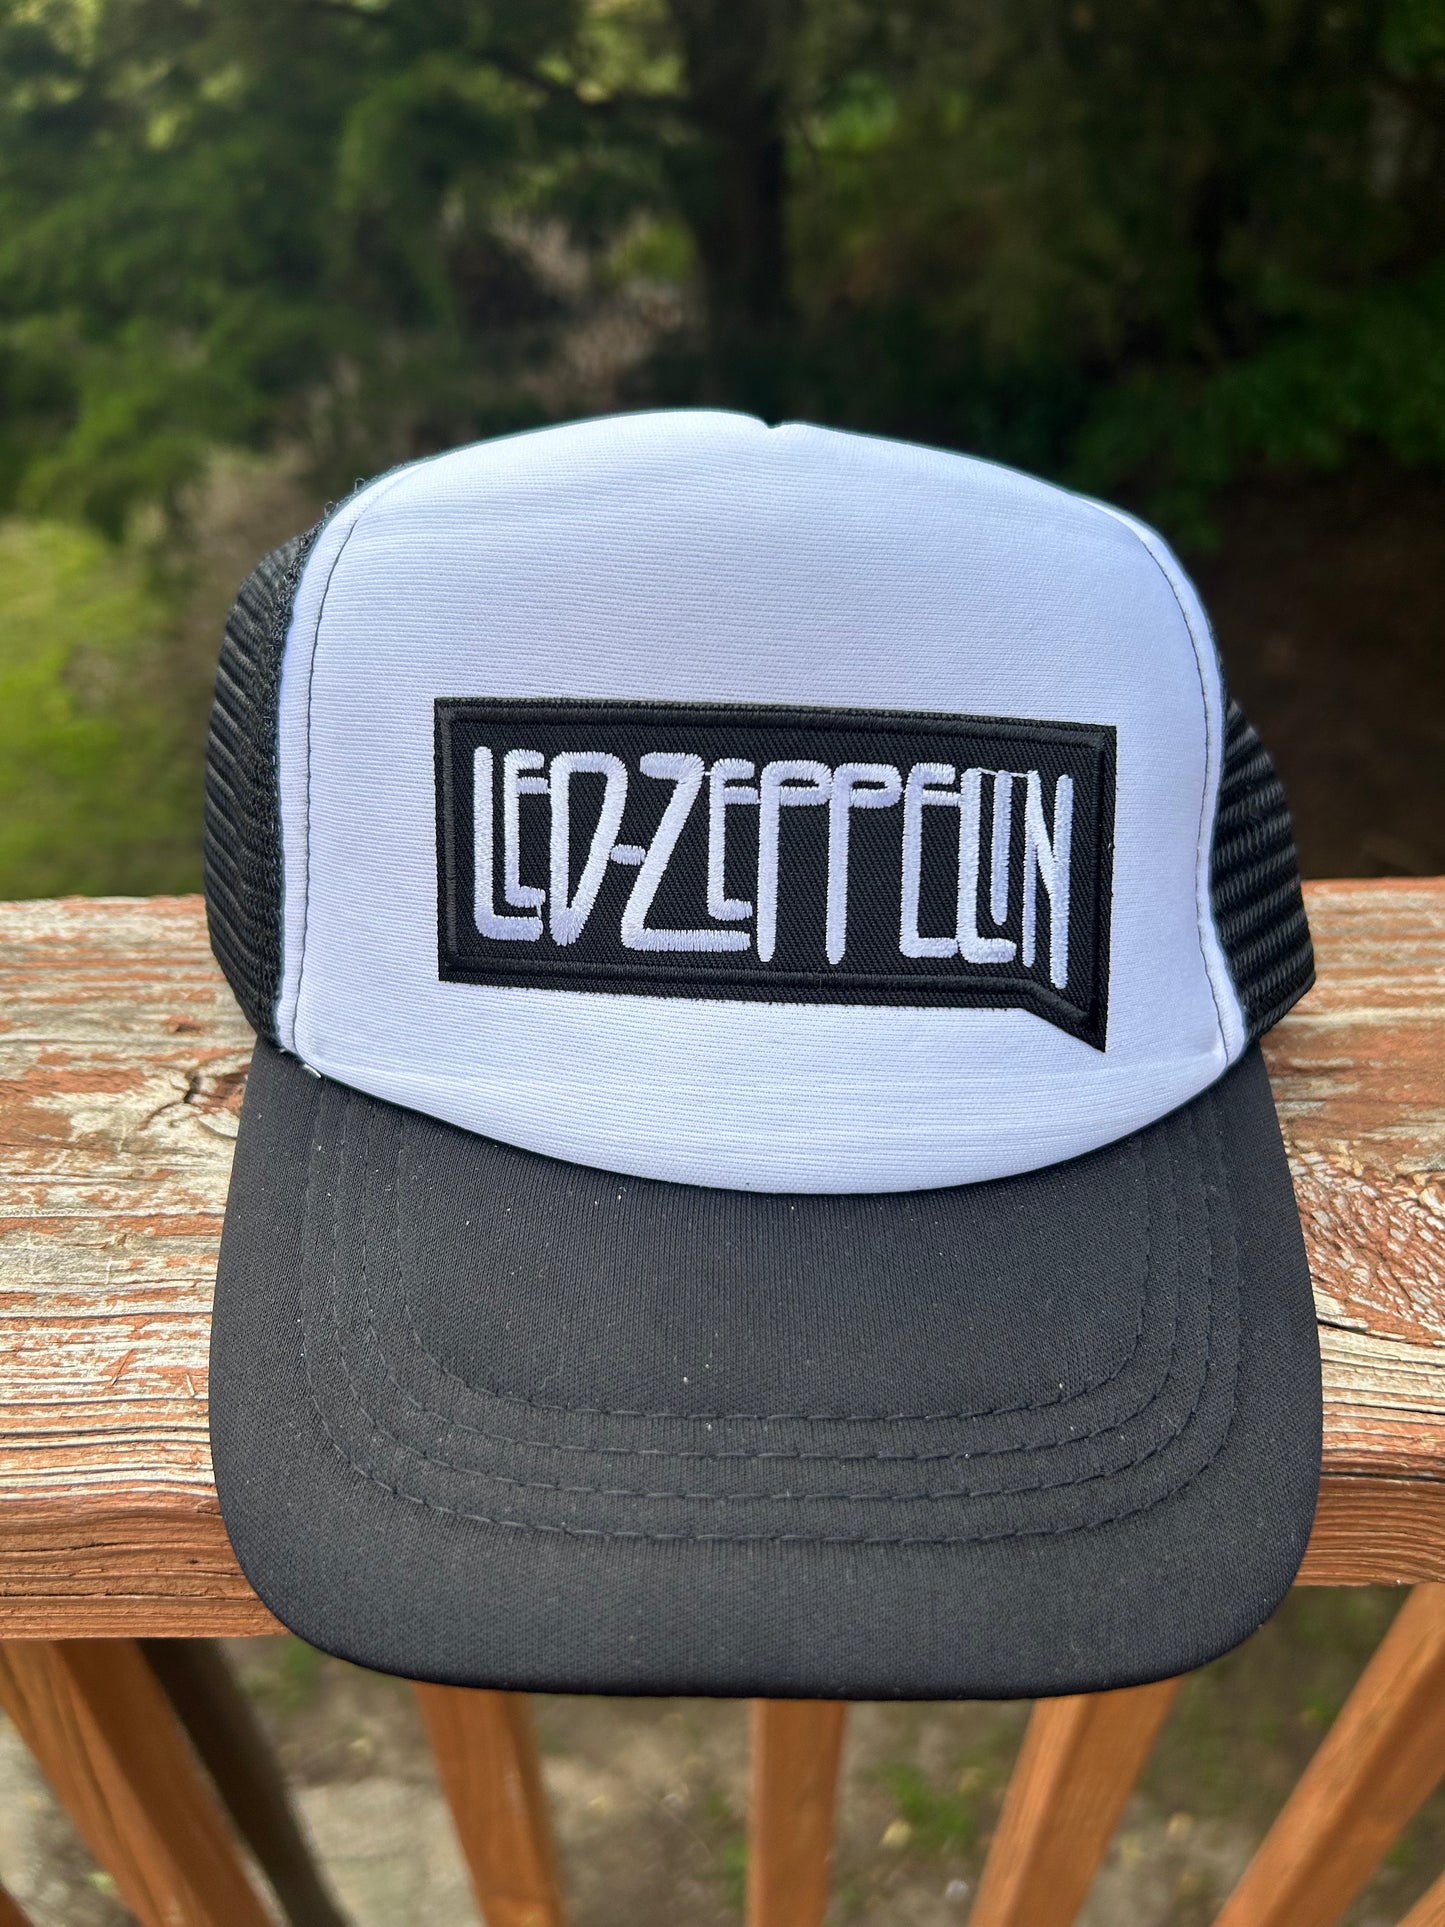 Led Zeppelin - Toddler